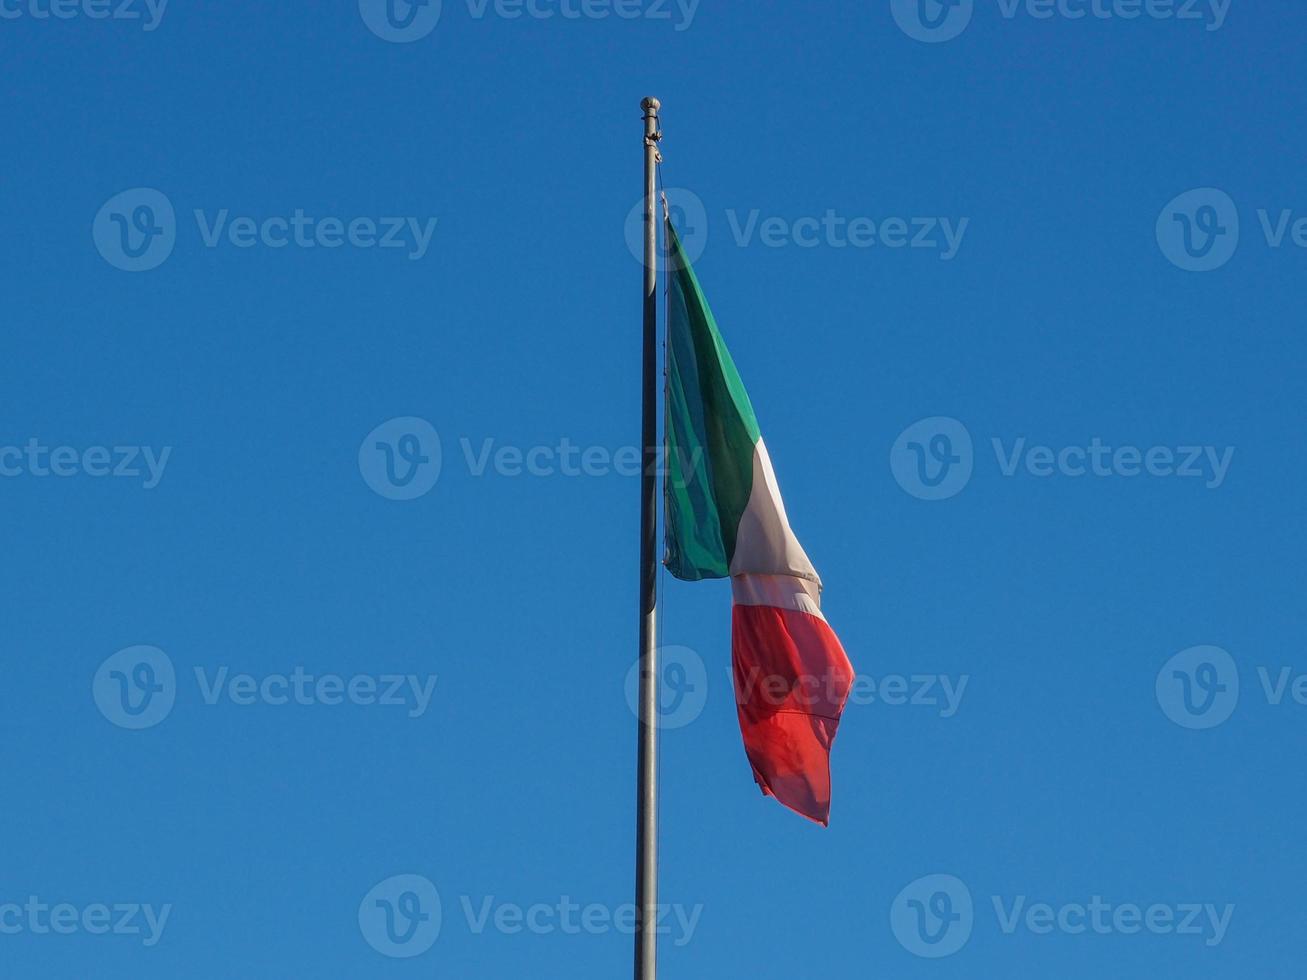 bandera italiana sobre el cielo azul foto